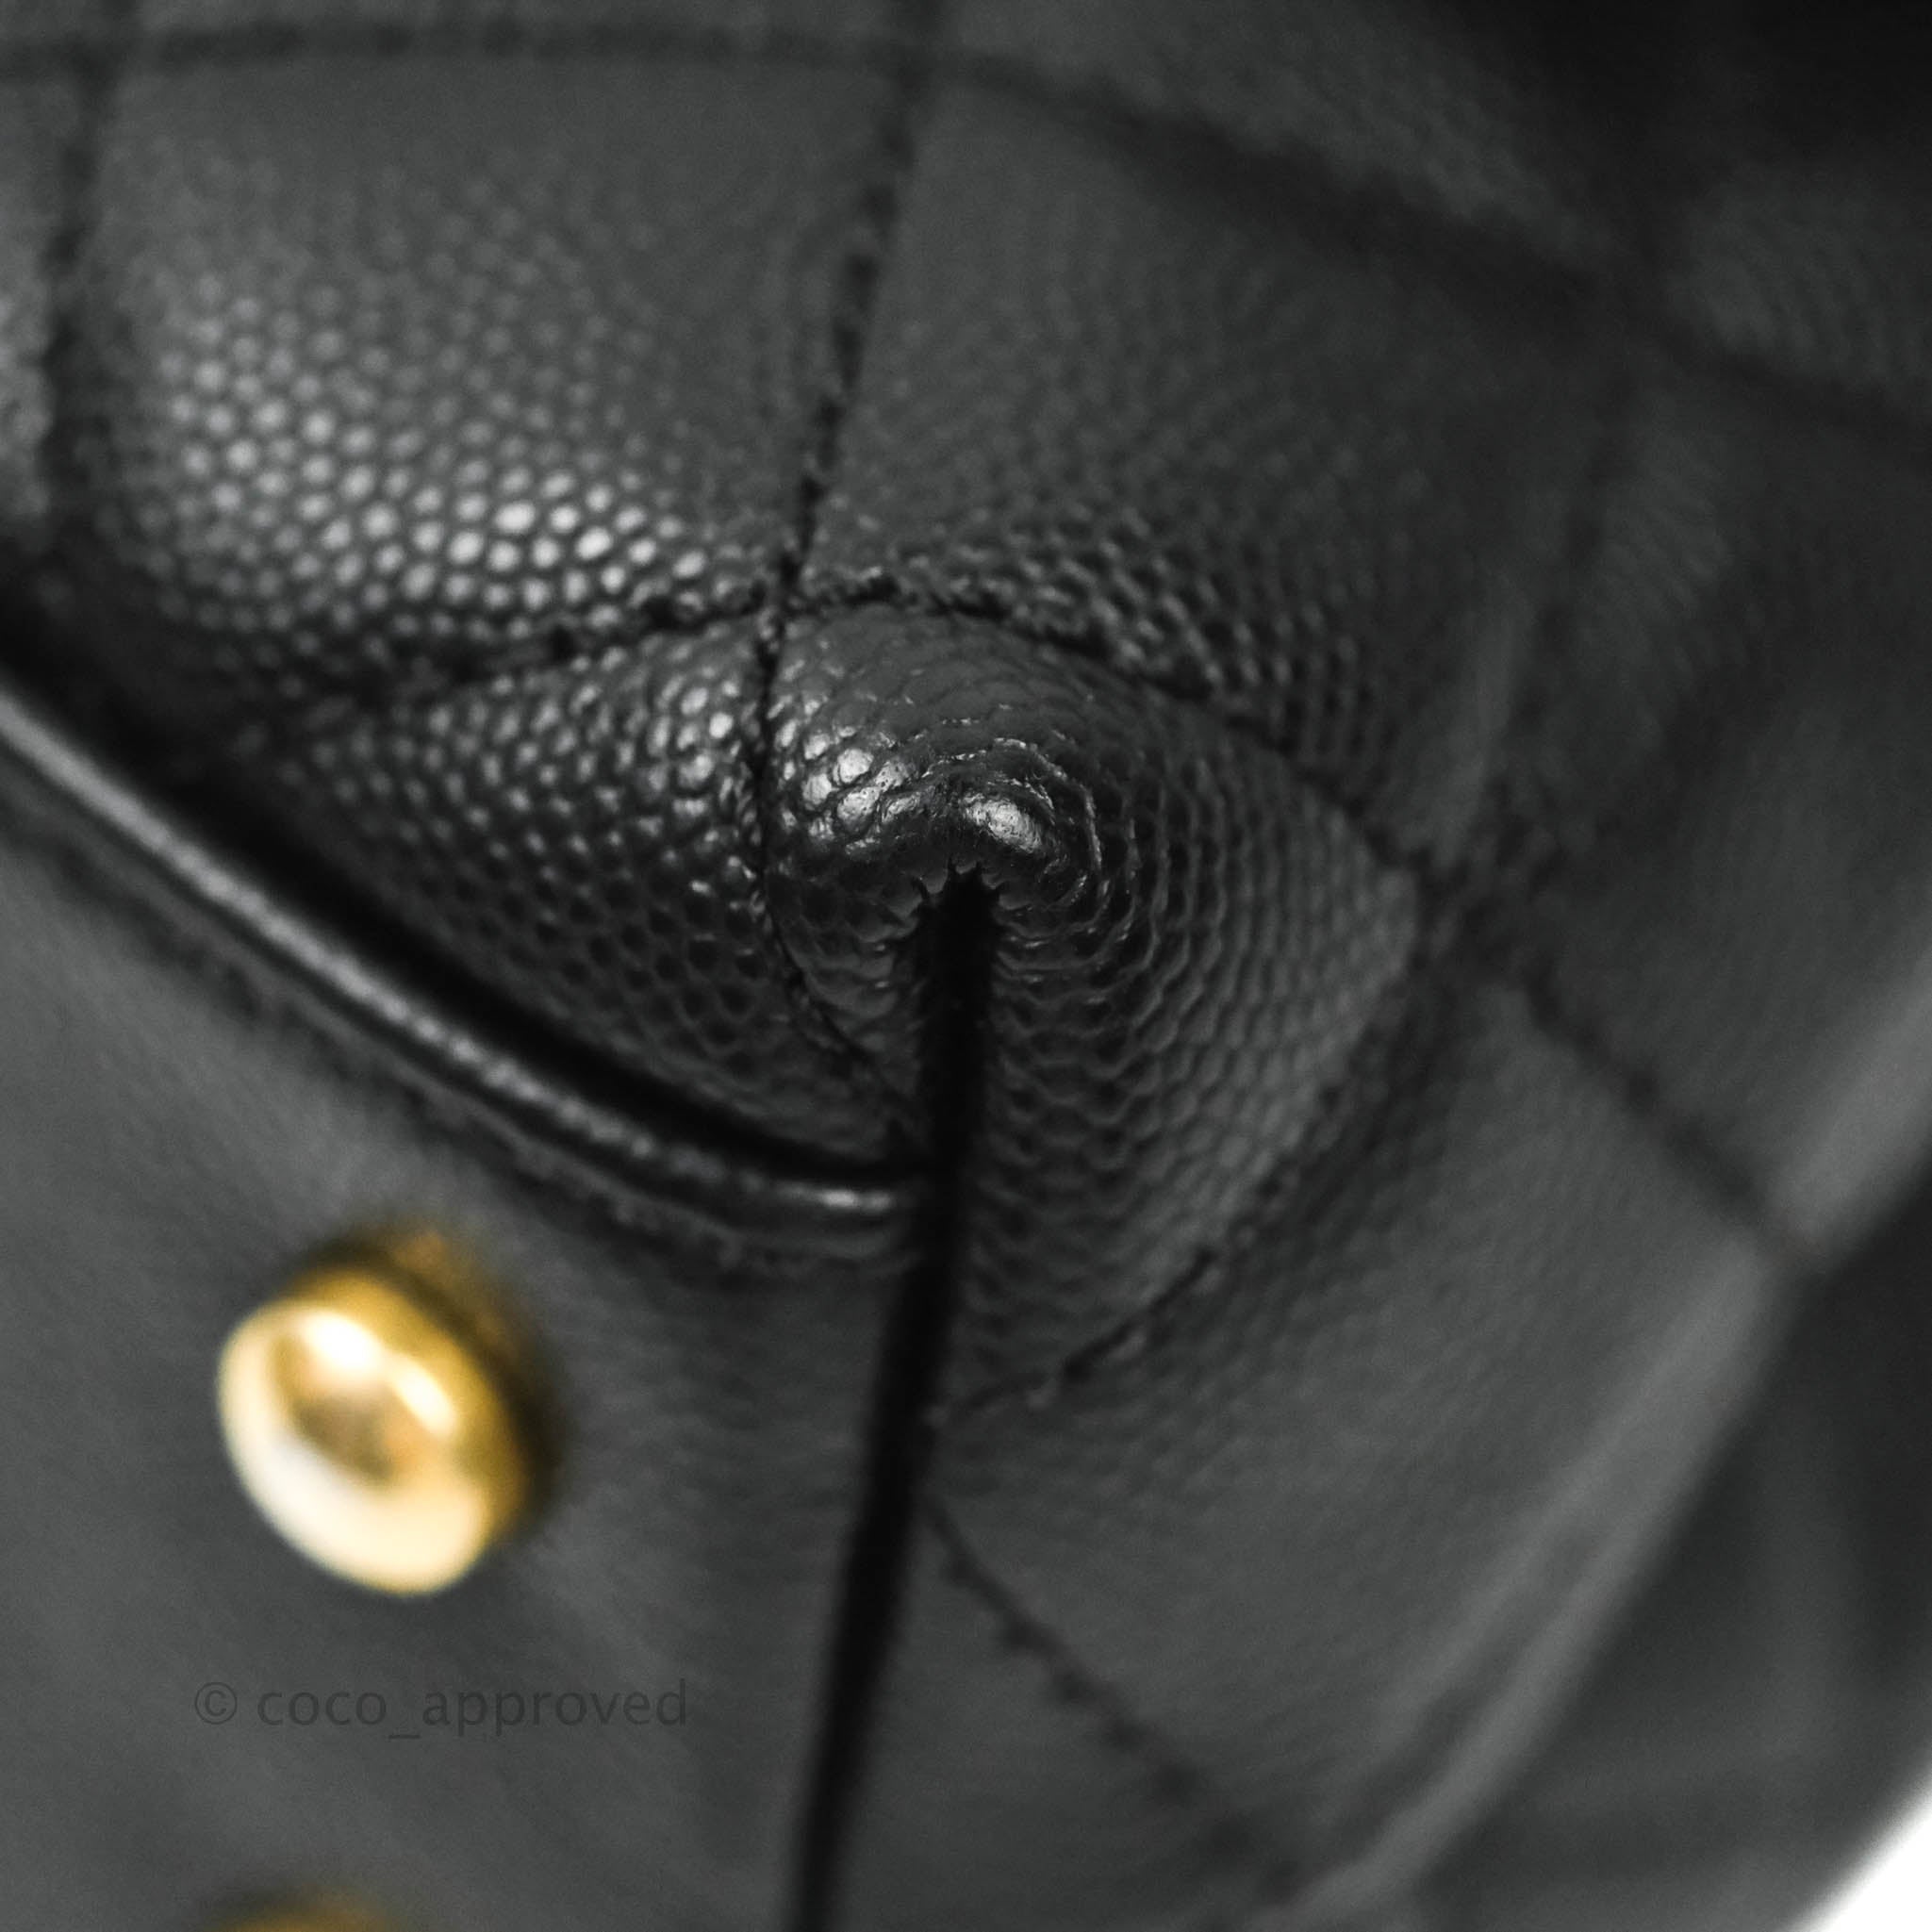 Coco handle bag small Caviar Black – Kluxq